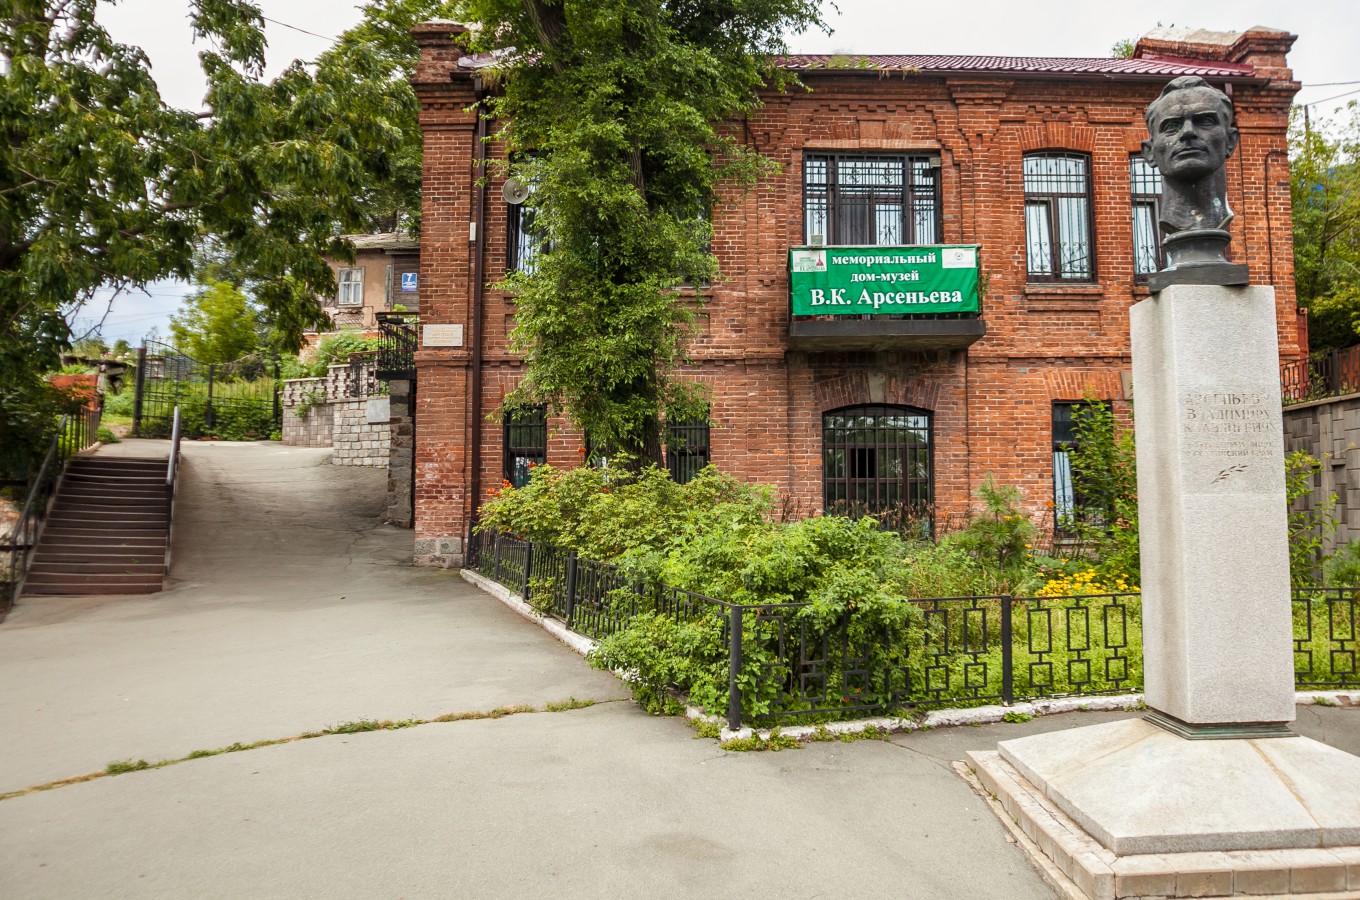 Мемориальный дом-музей В. К. Арсеньева